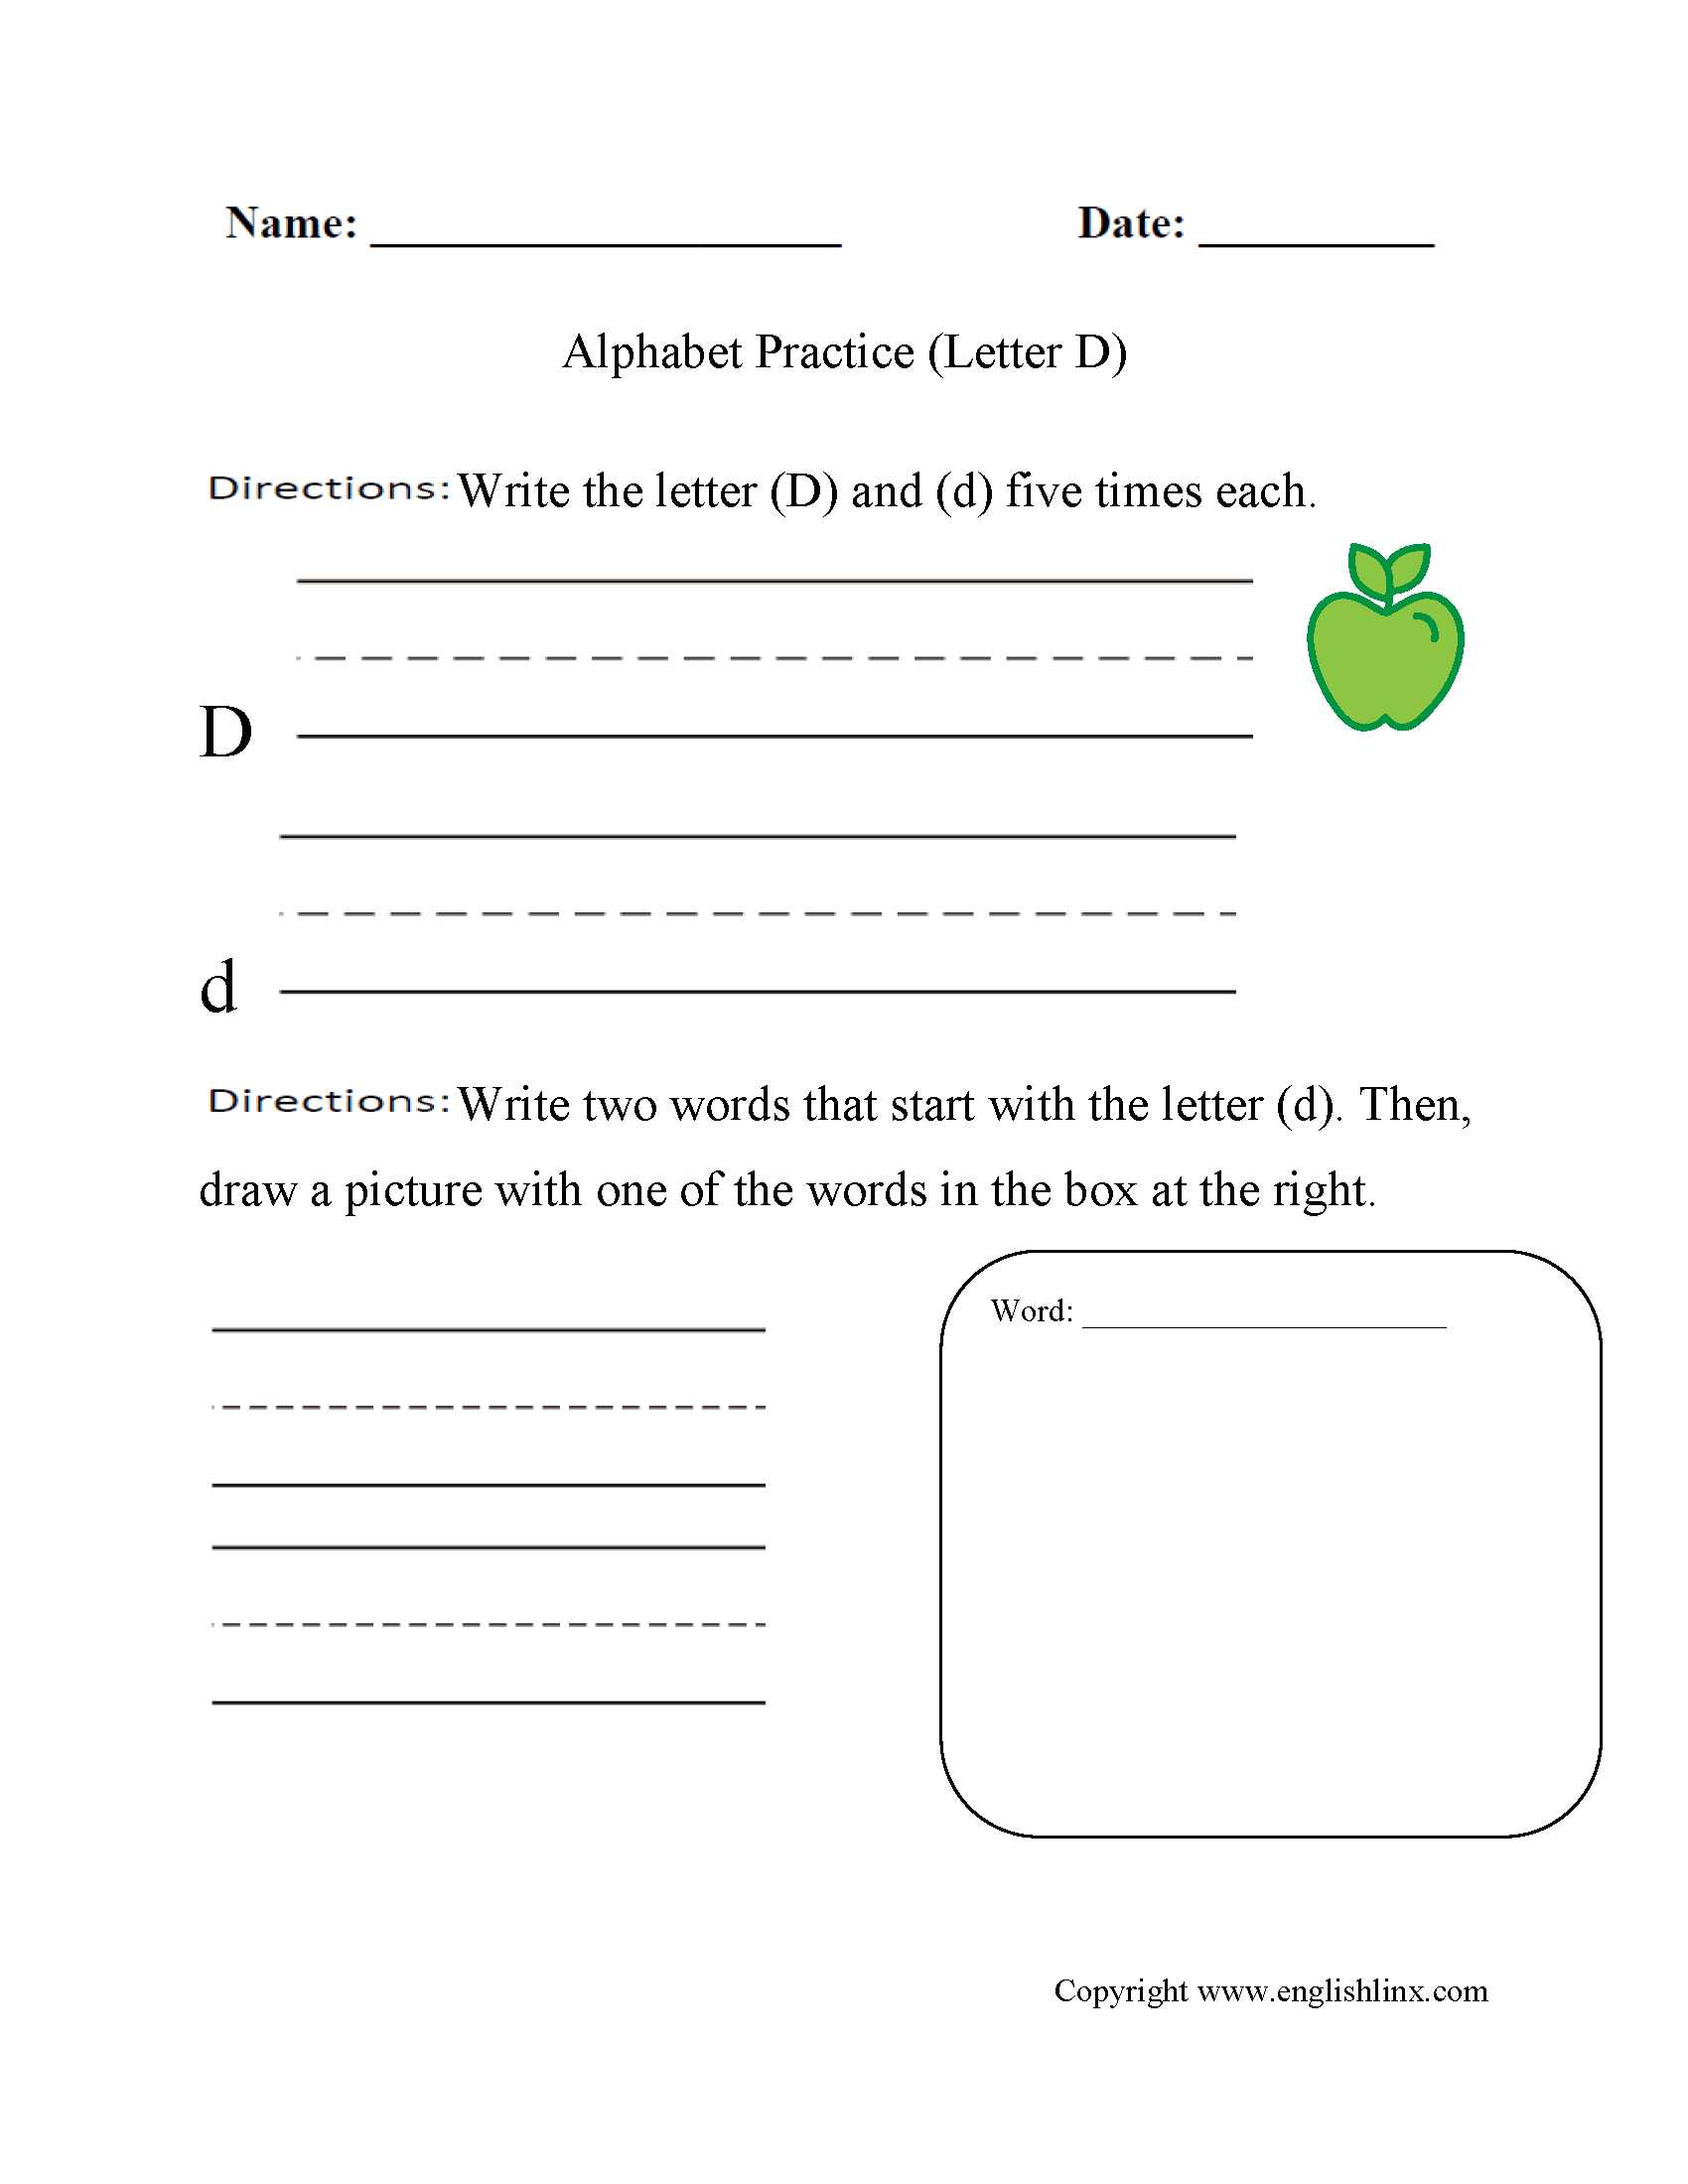 Preschool Number Worksheets or Alphabet Worksheet Letter D Great English tools